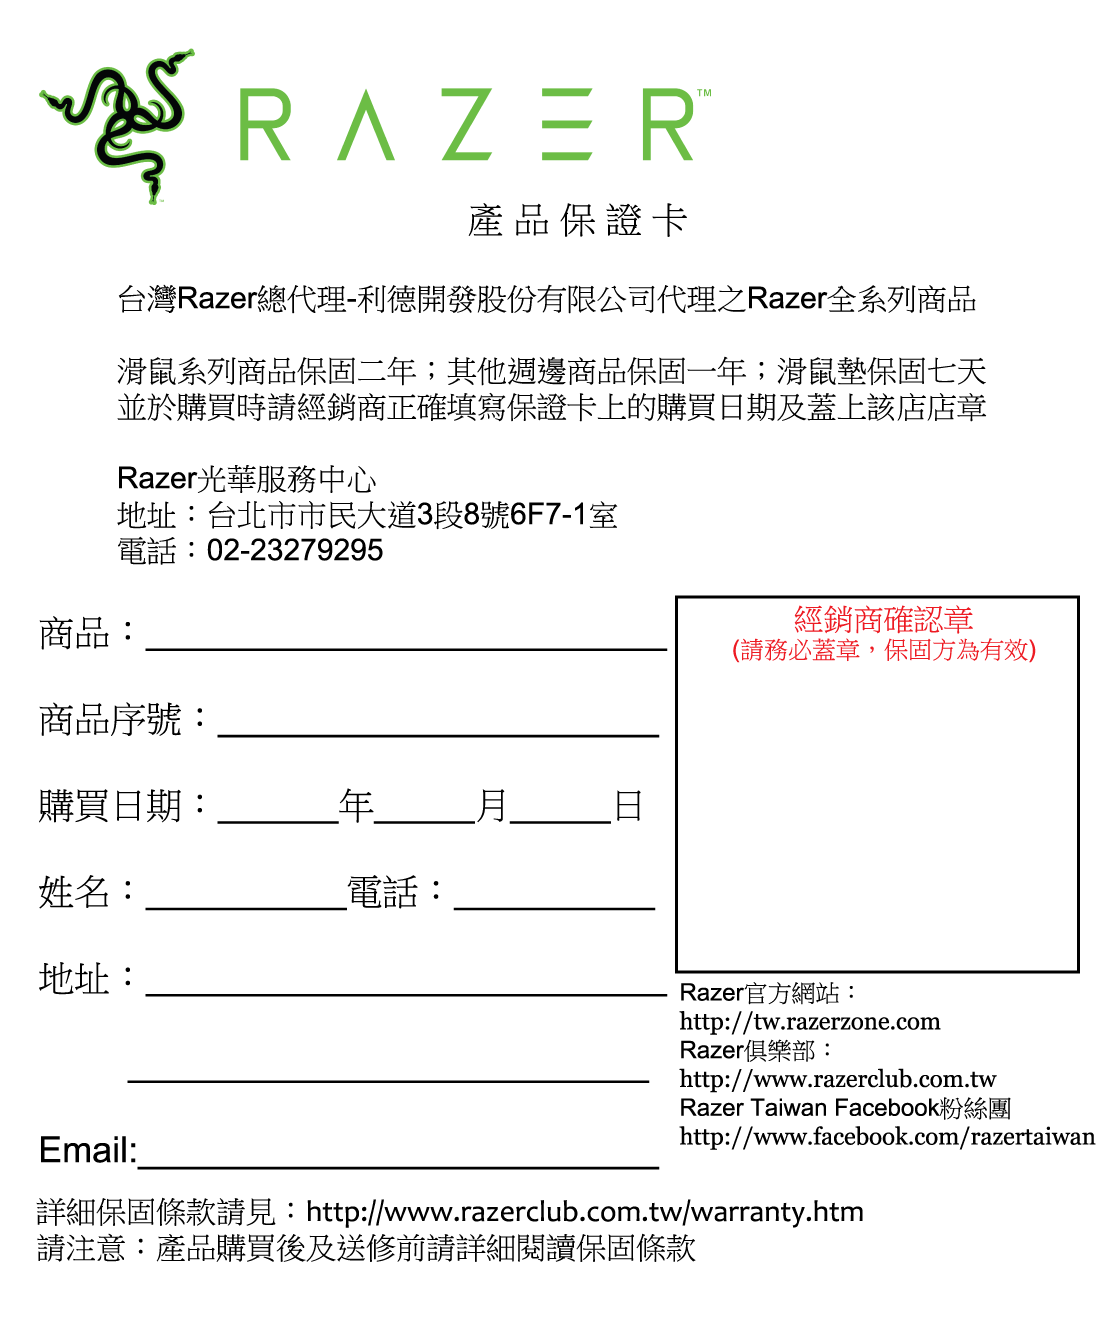 Razer 台灣雷蛇於fb 公告仿冒商品聲明 Xfastest News